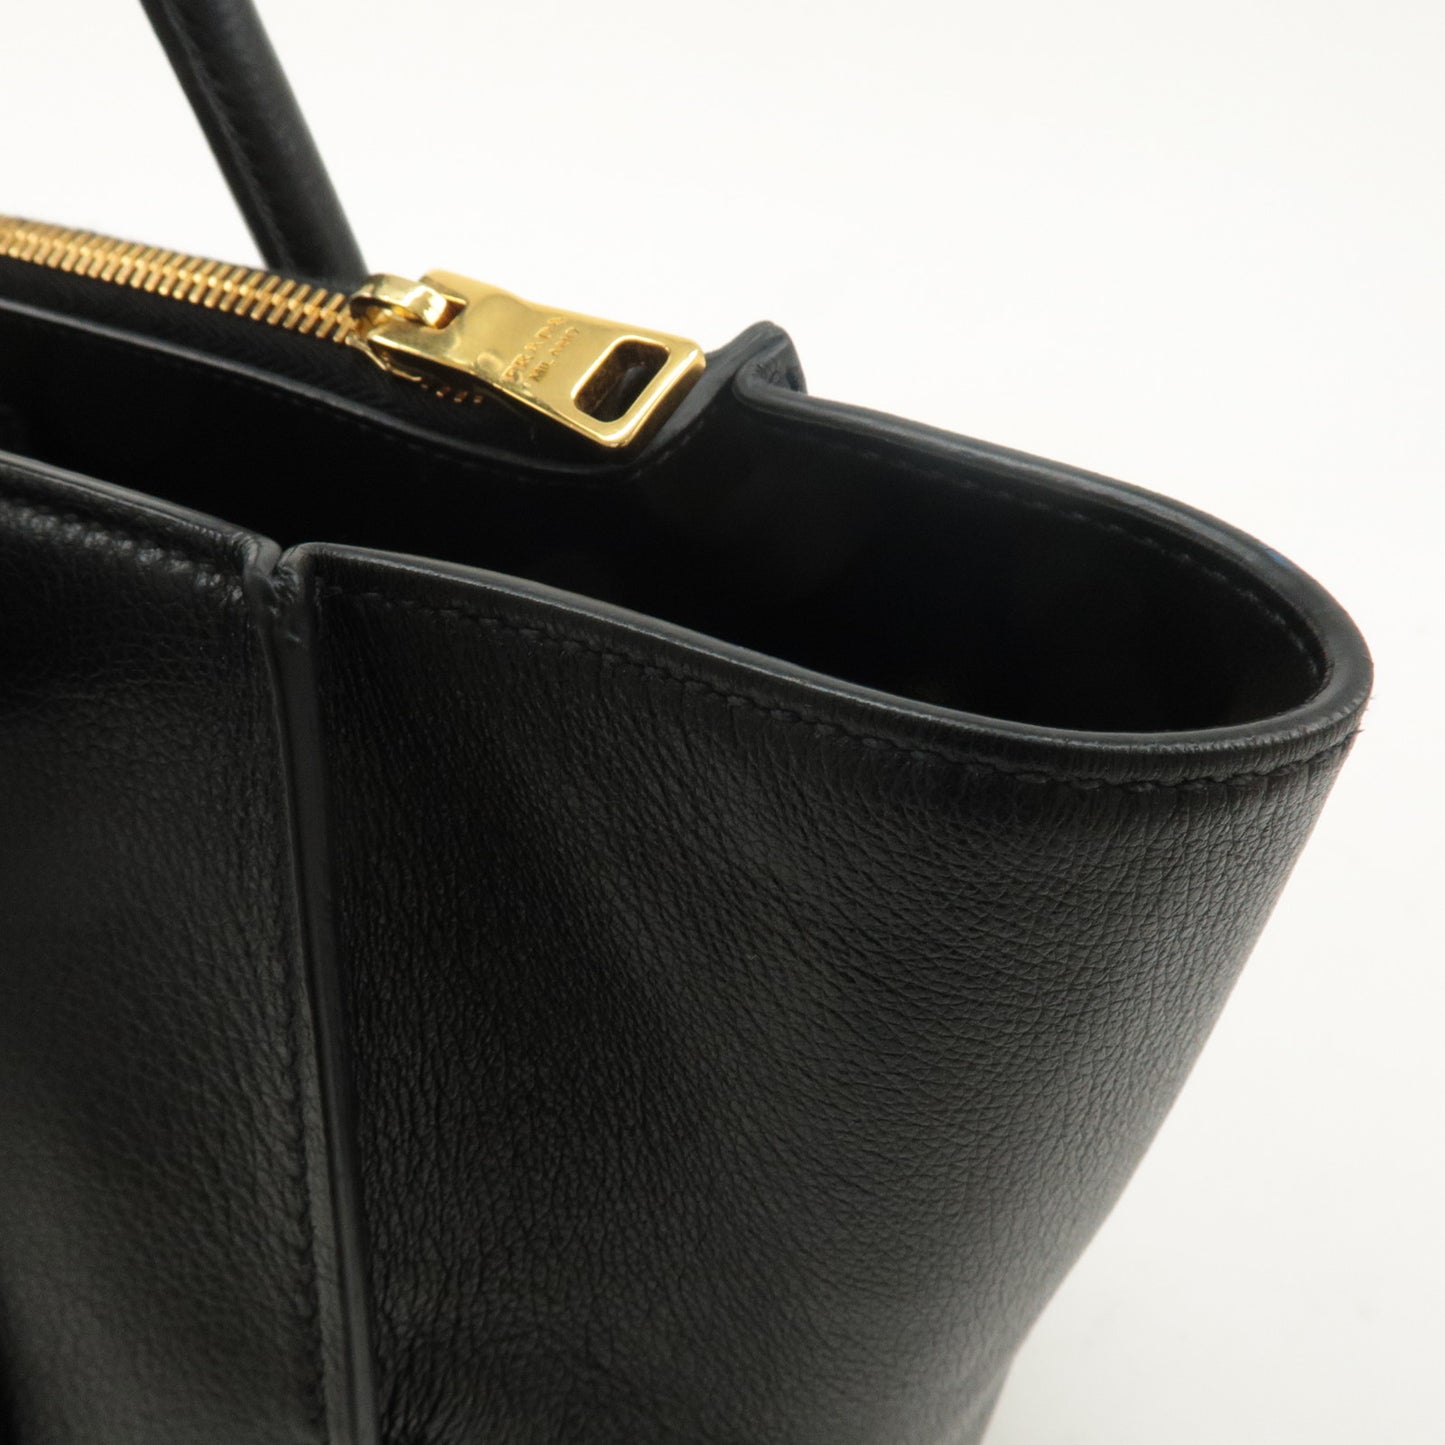 PRADA Logo Leather 2way Bag Hand Bag Shoulder Bag Black